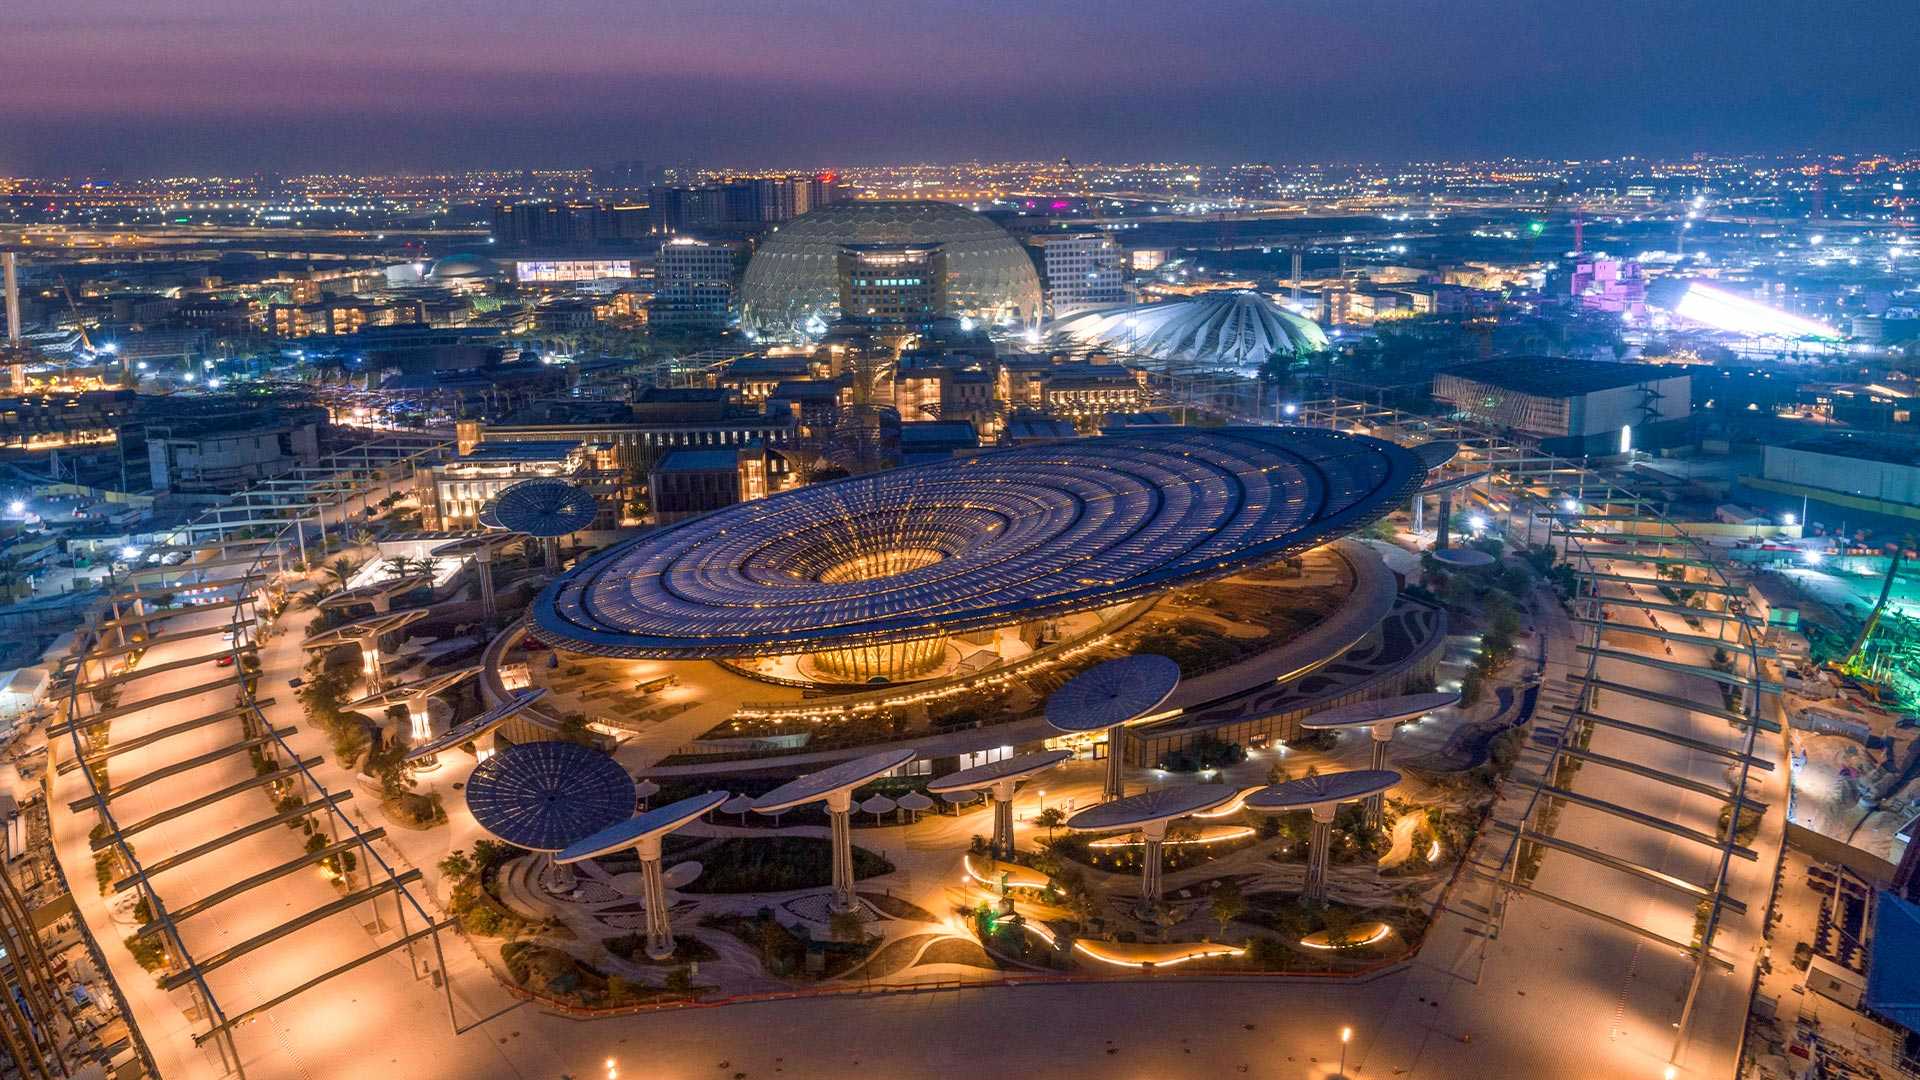 Read more about the article Retrouvez-nous à l’Expo Dubaï 2020 du 1 octobre 2021 au 31 mars 2022 sur le stand ….